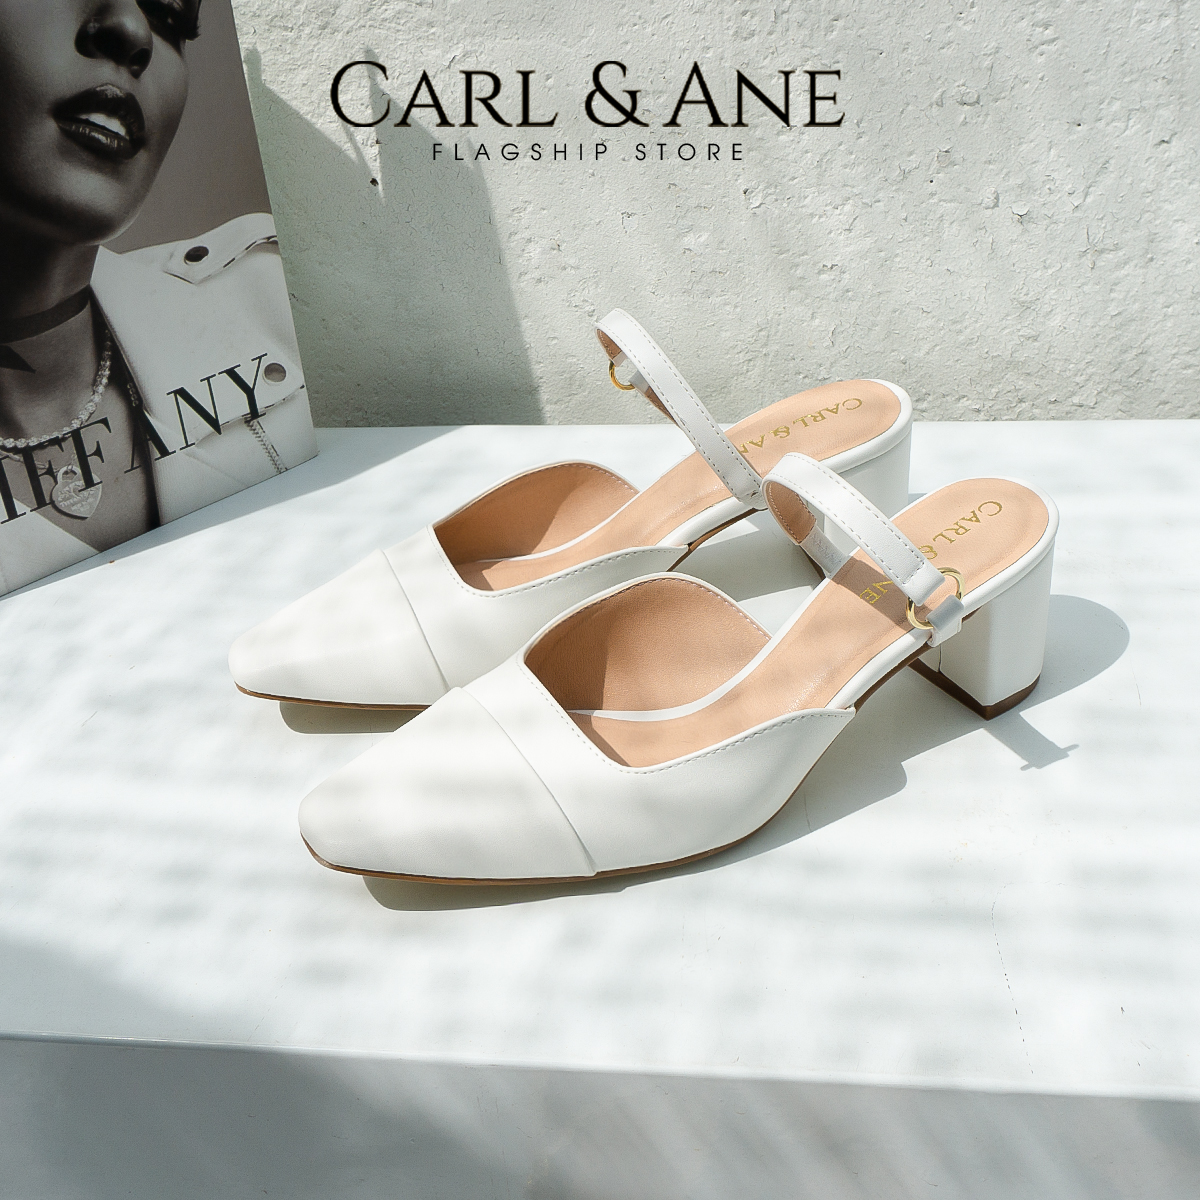 Carl & Ane - Giày gót vuông mũi nhọn thời trang công sở cao 5cm màu đen - CL024